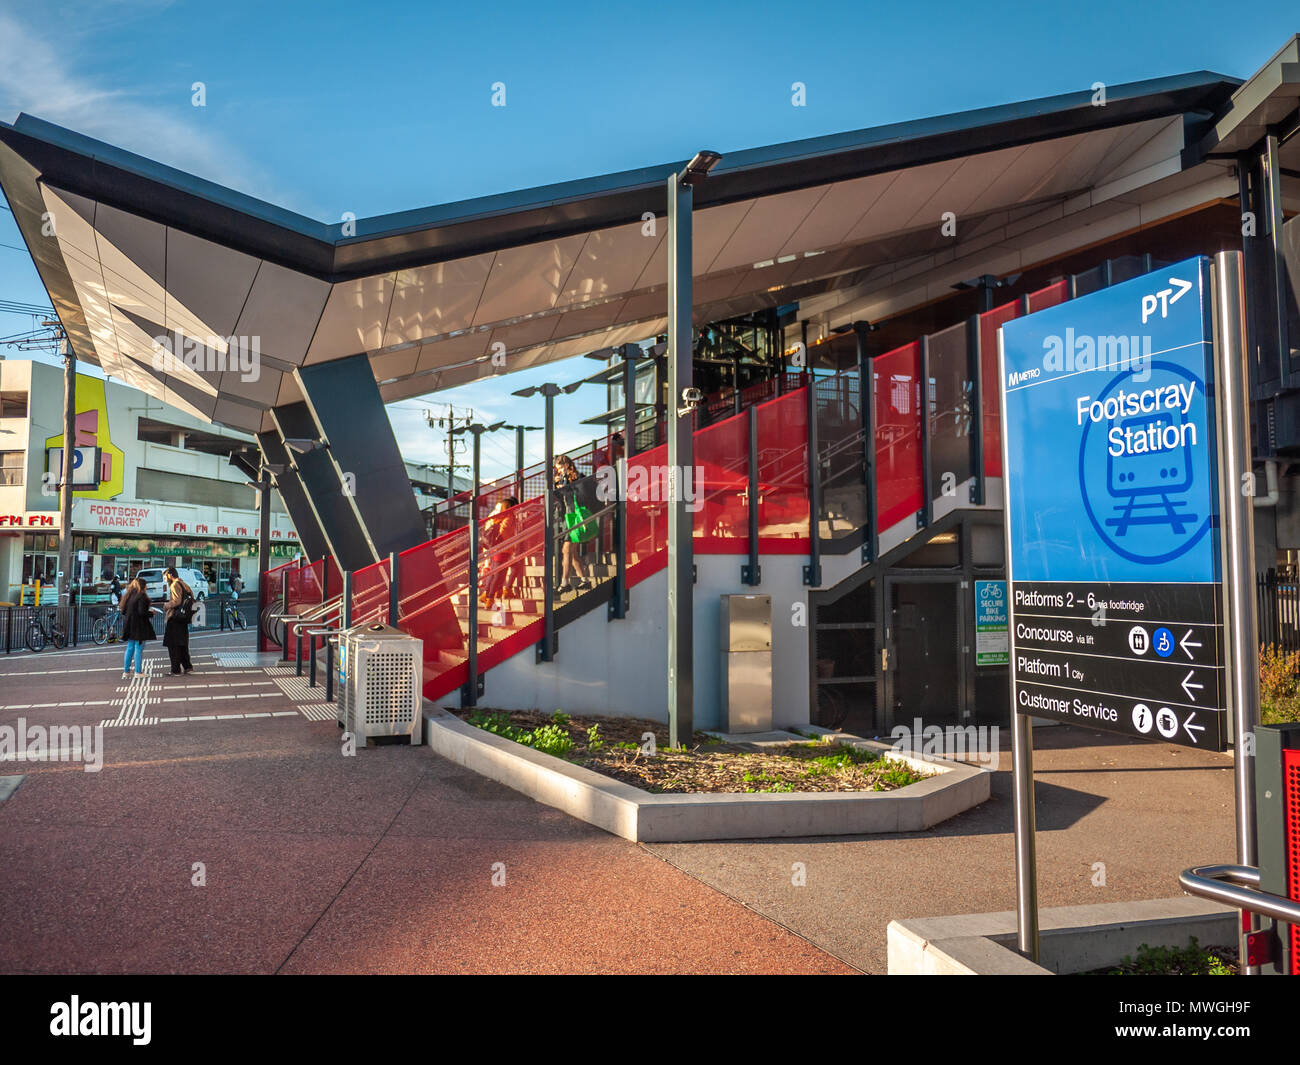 Footscray Railway Station near market. VIC Australia Stock Photo